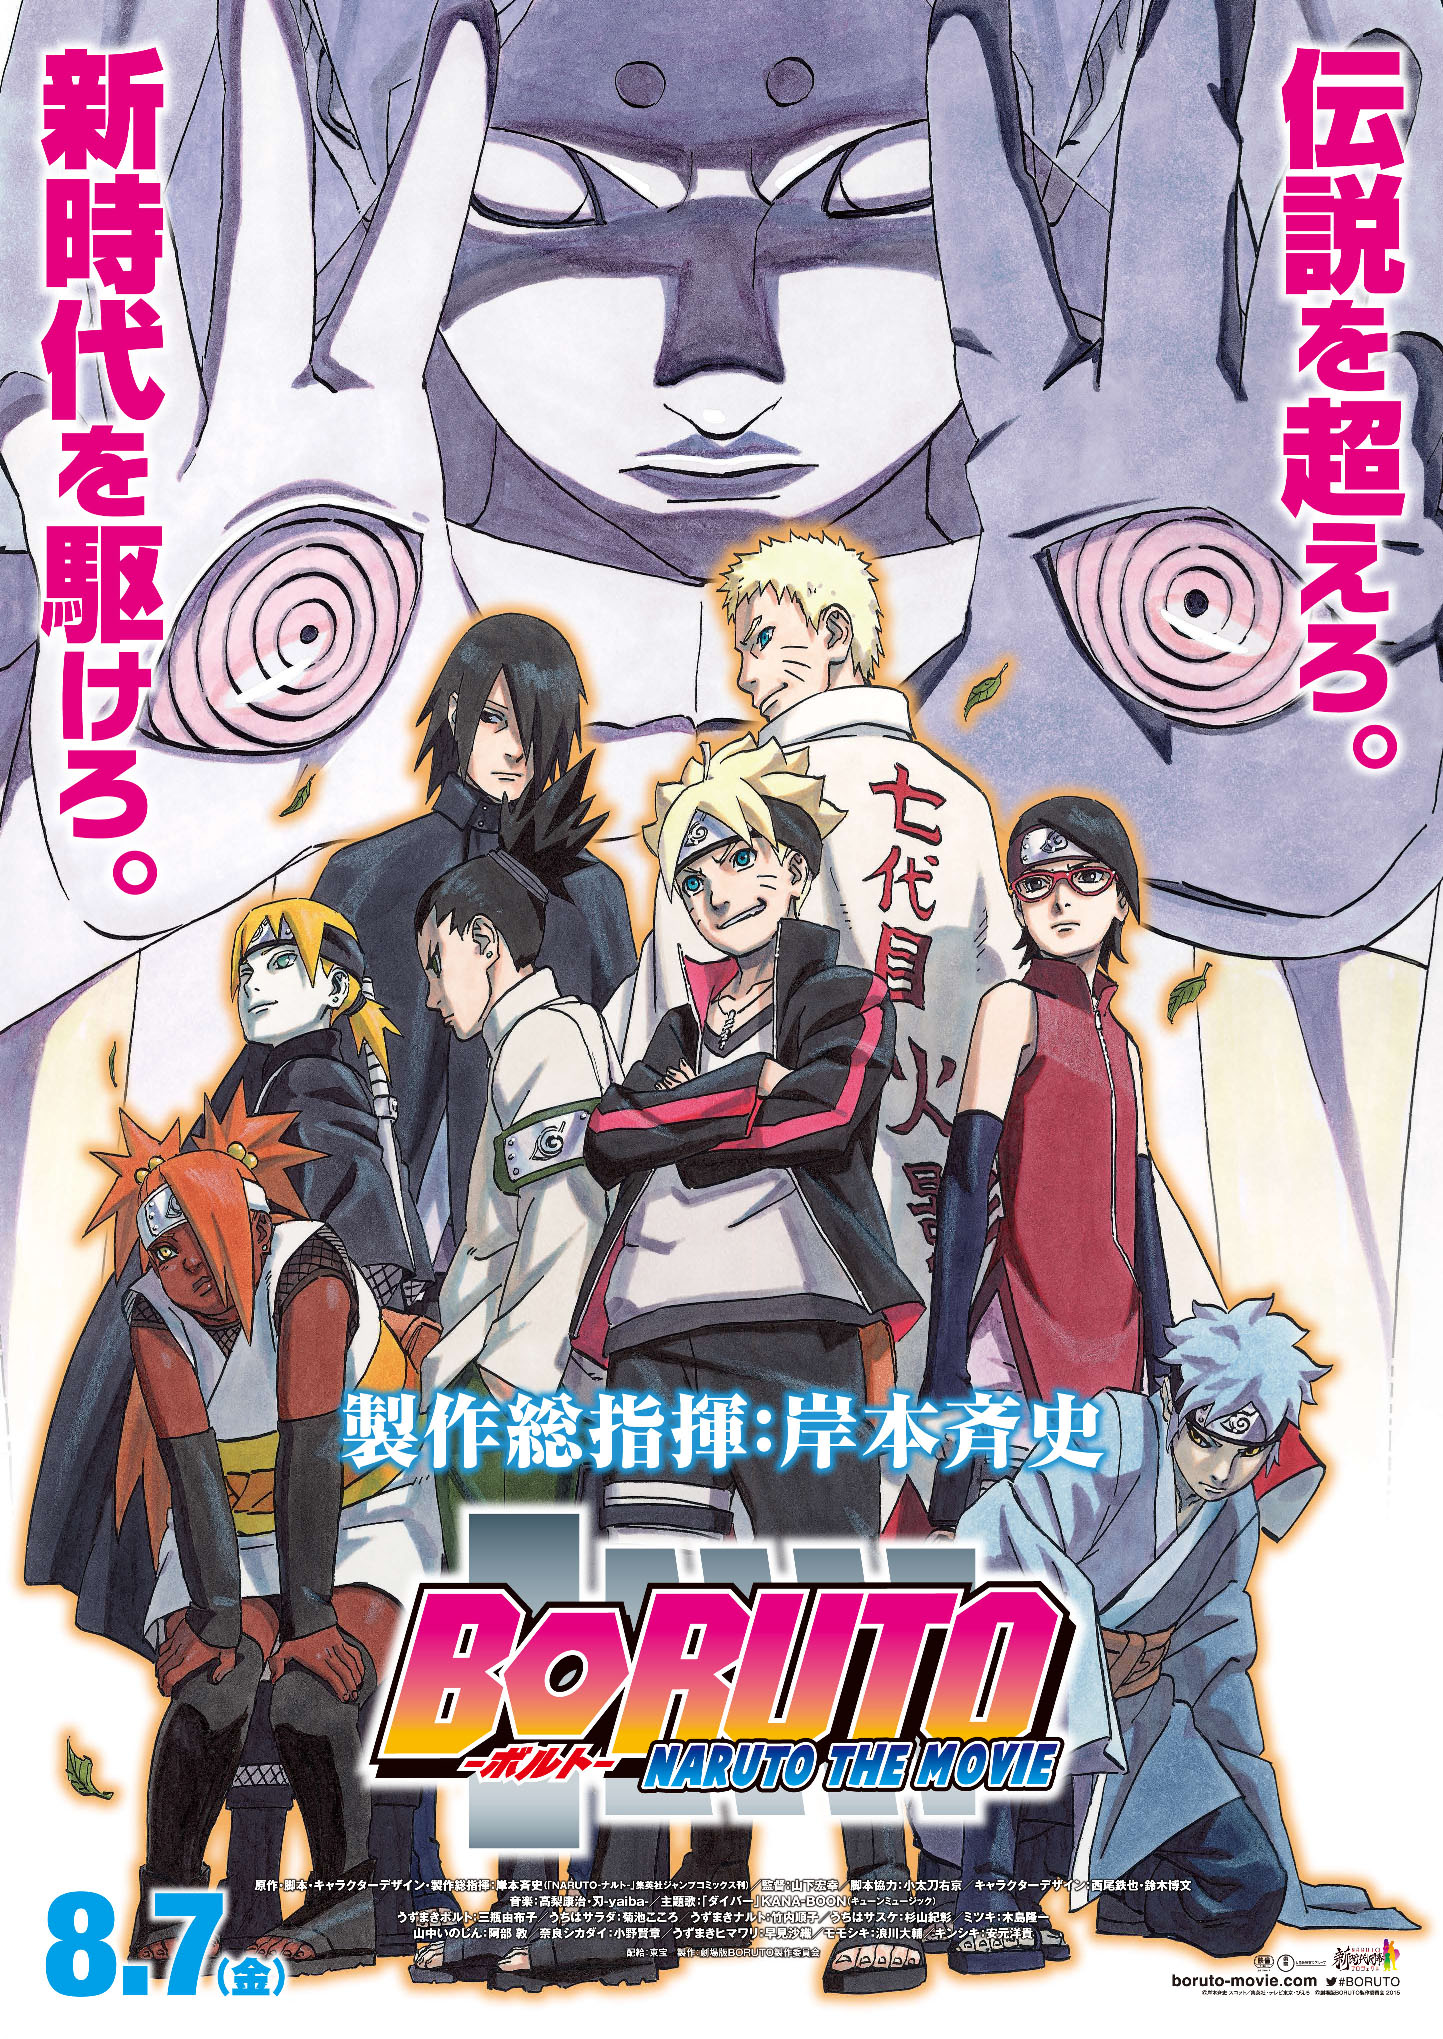 Boruto: The Naruto Movie